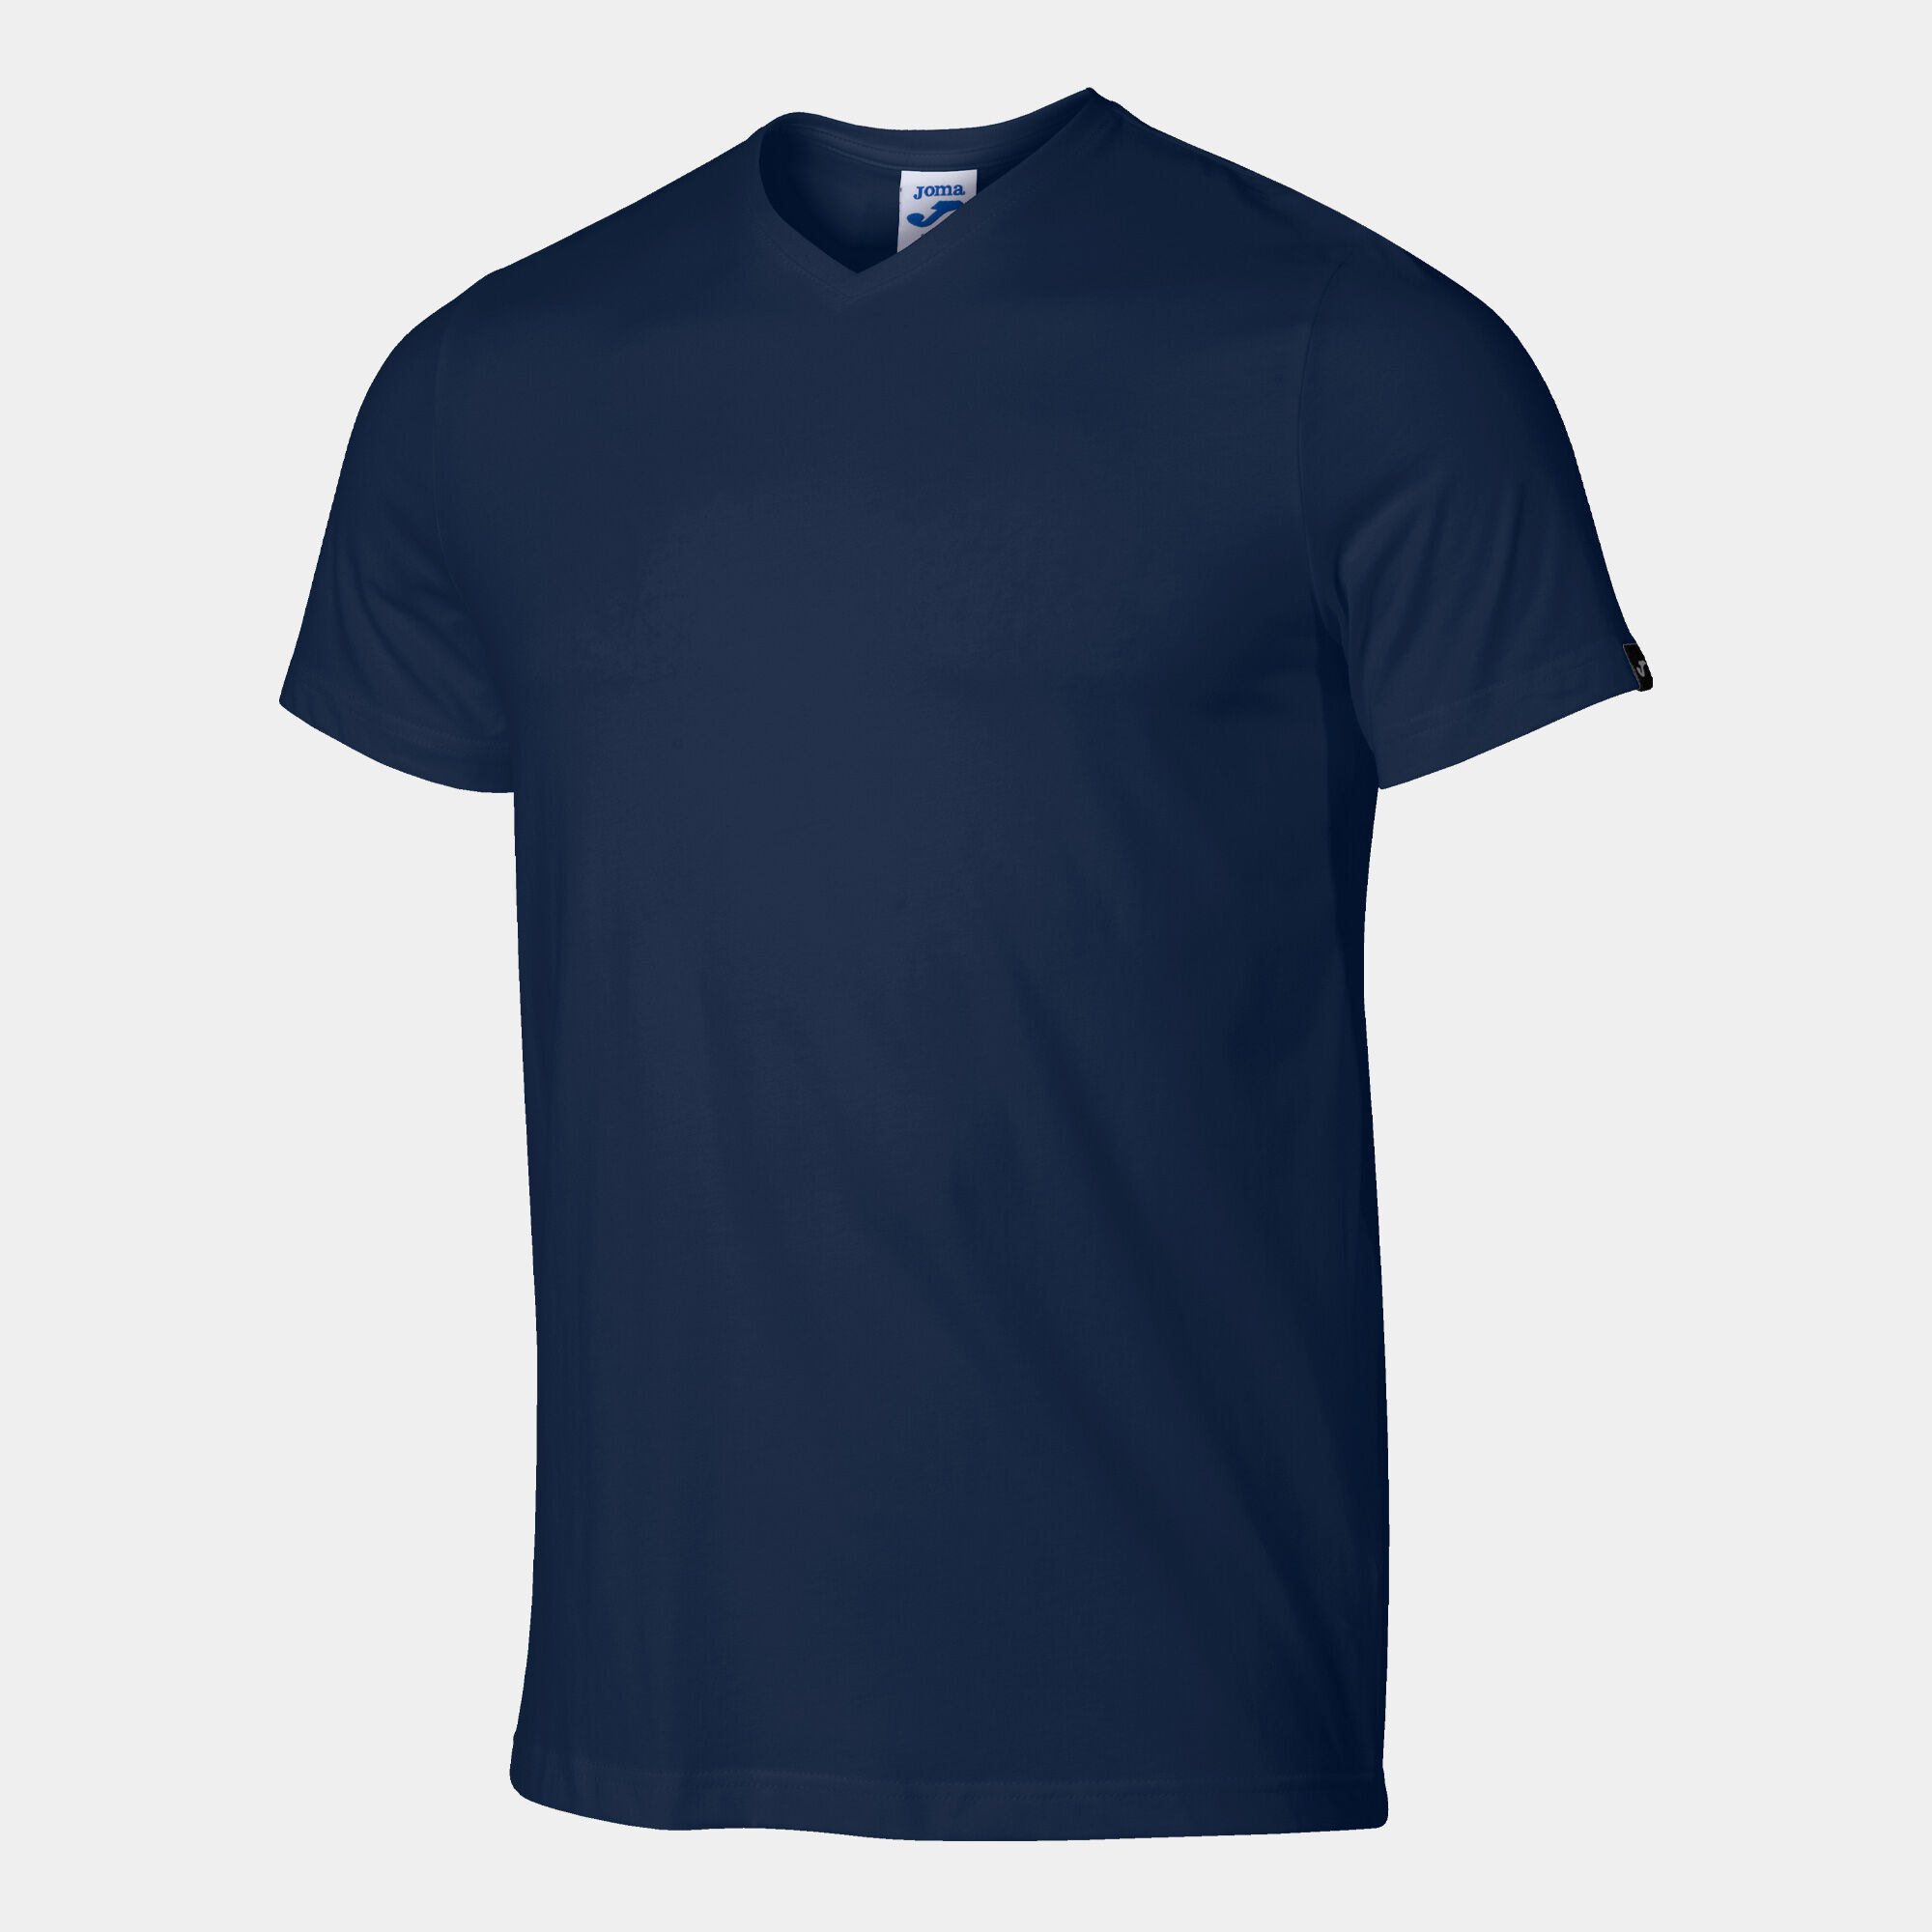 Camiseta manga corta hombre Versalles marino